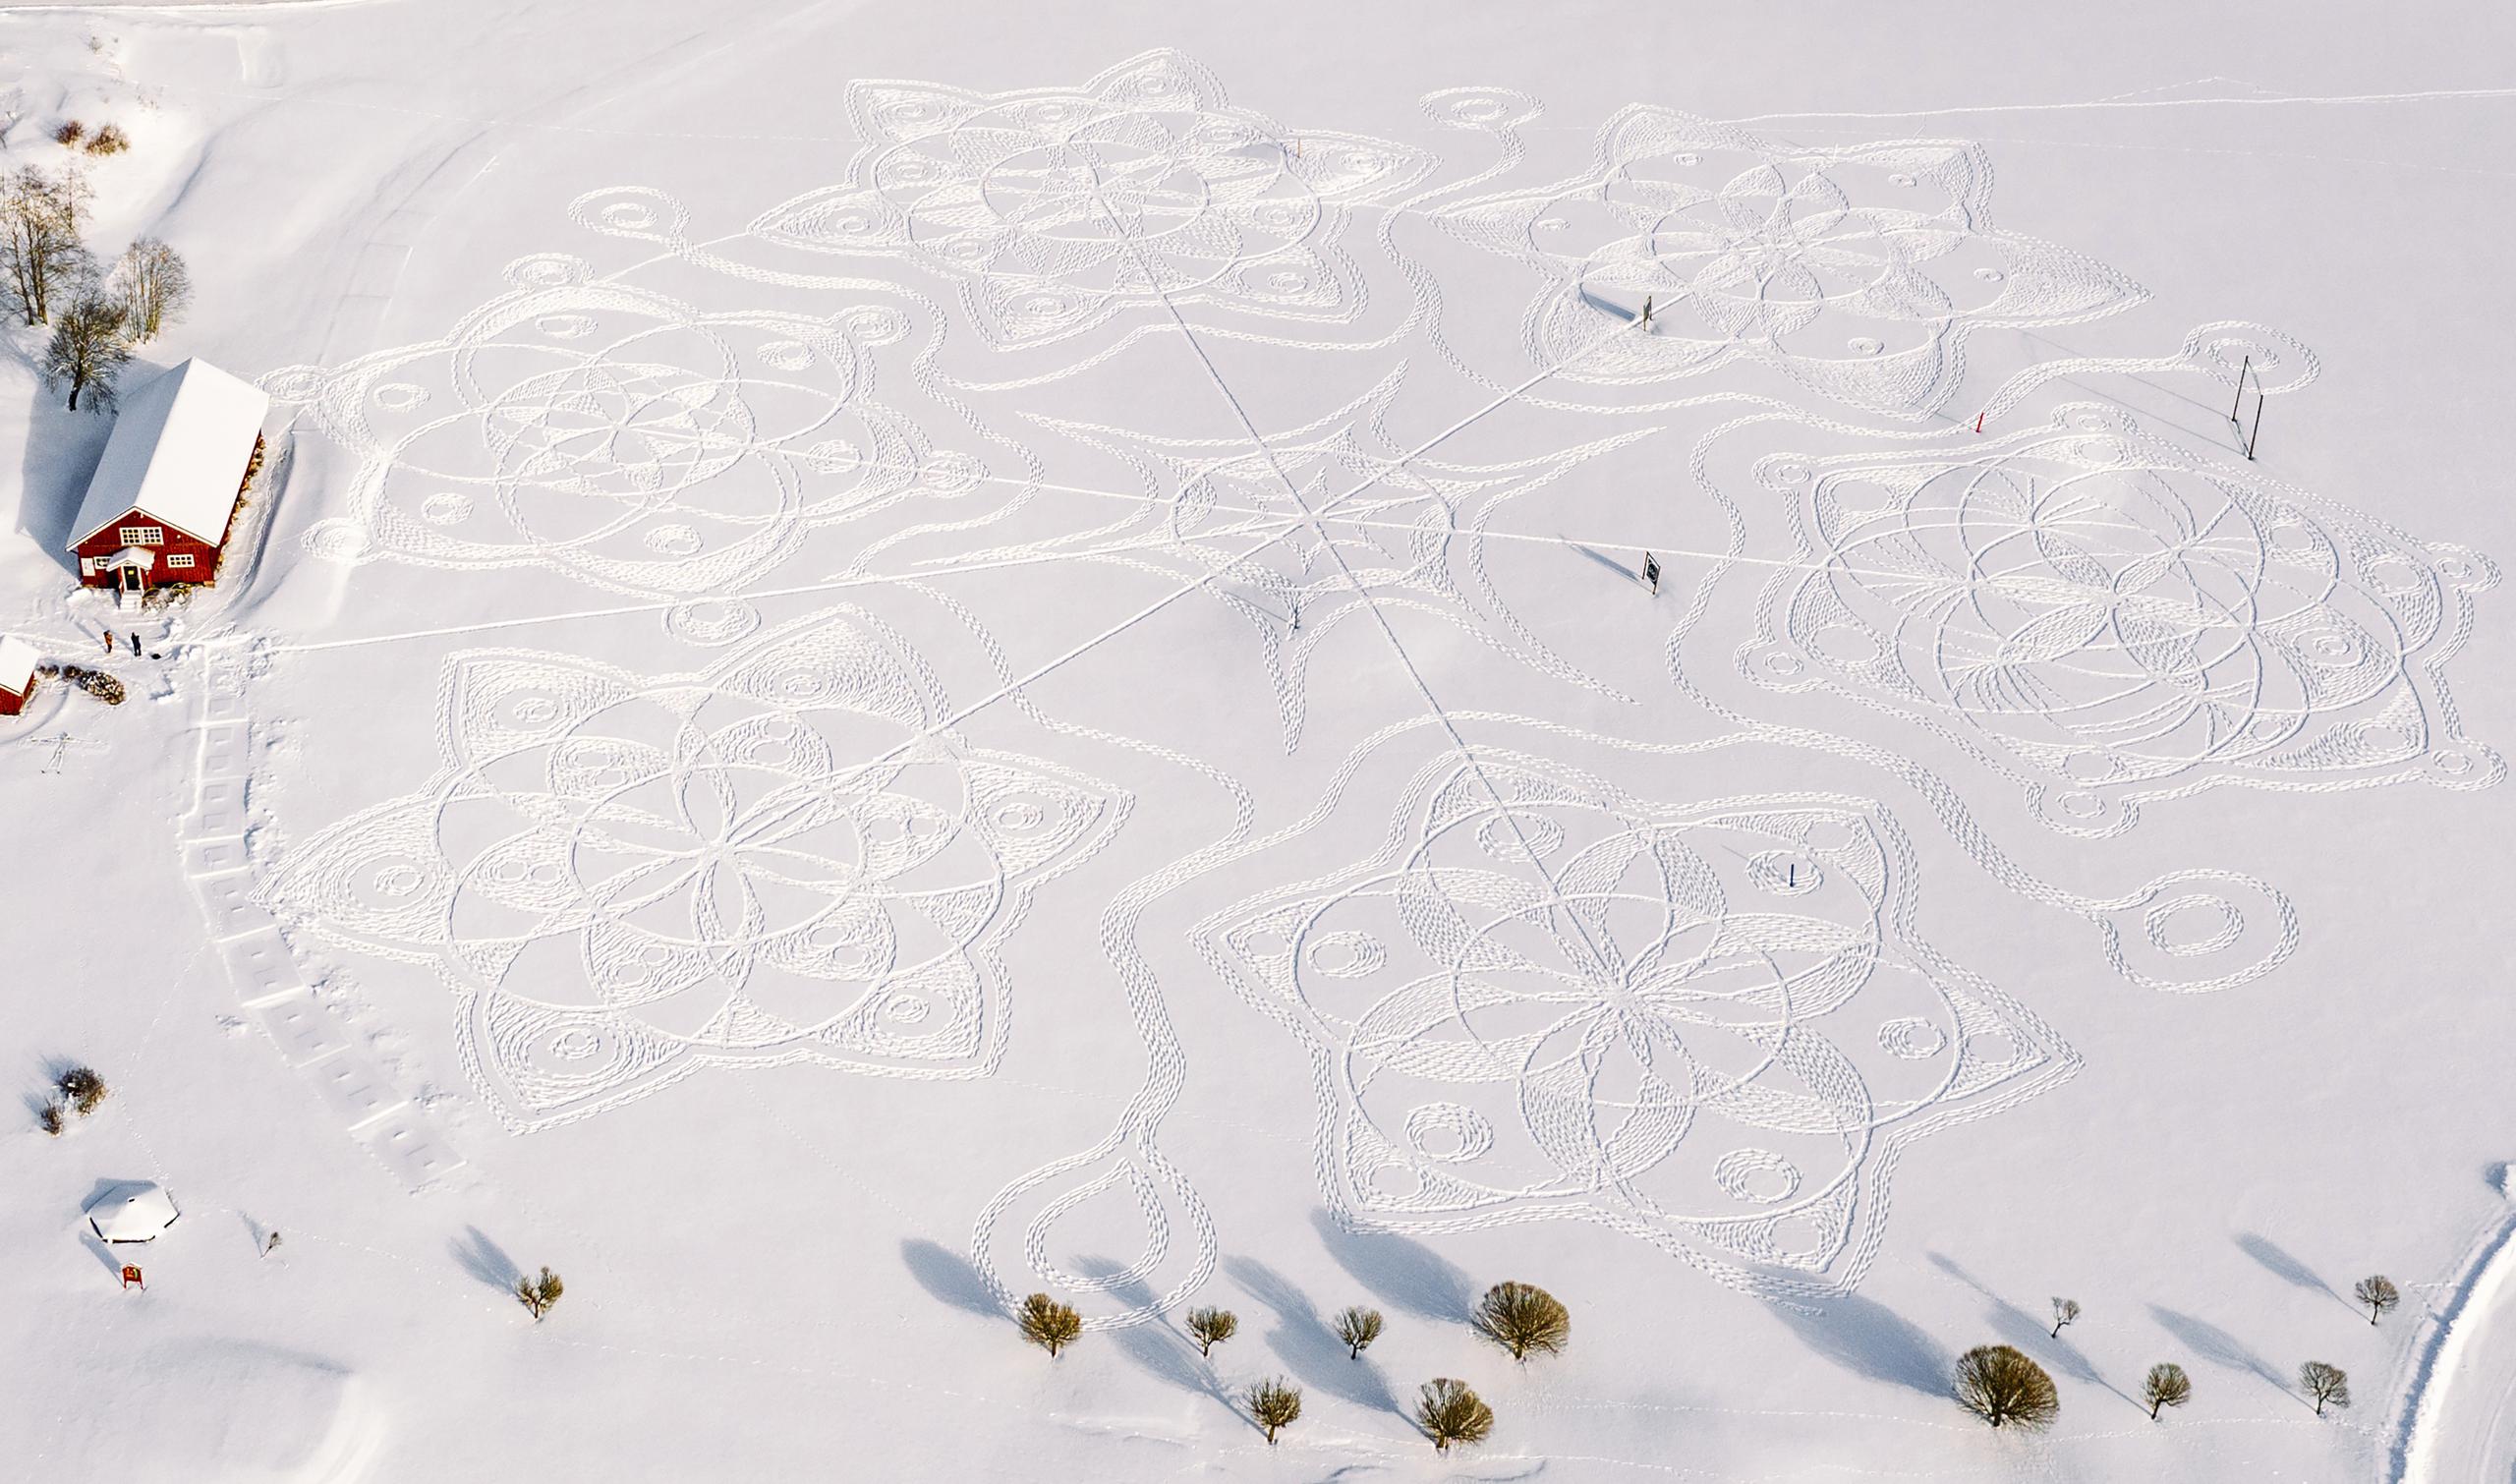 Es probablemente la obra de arte de estampado en nieve más grande en la historia del país nórdico.